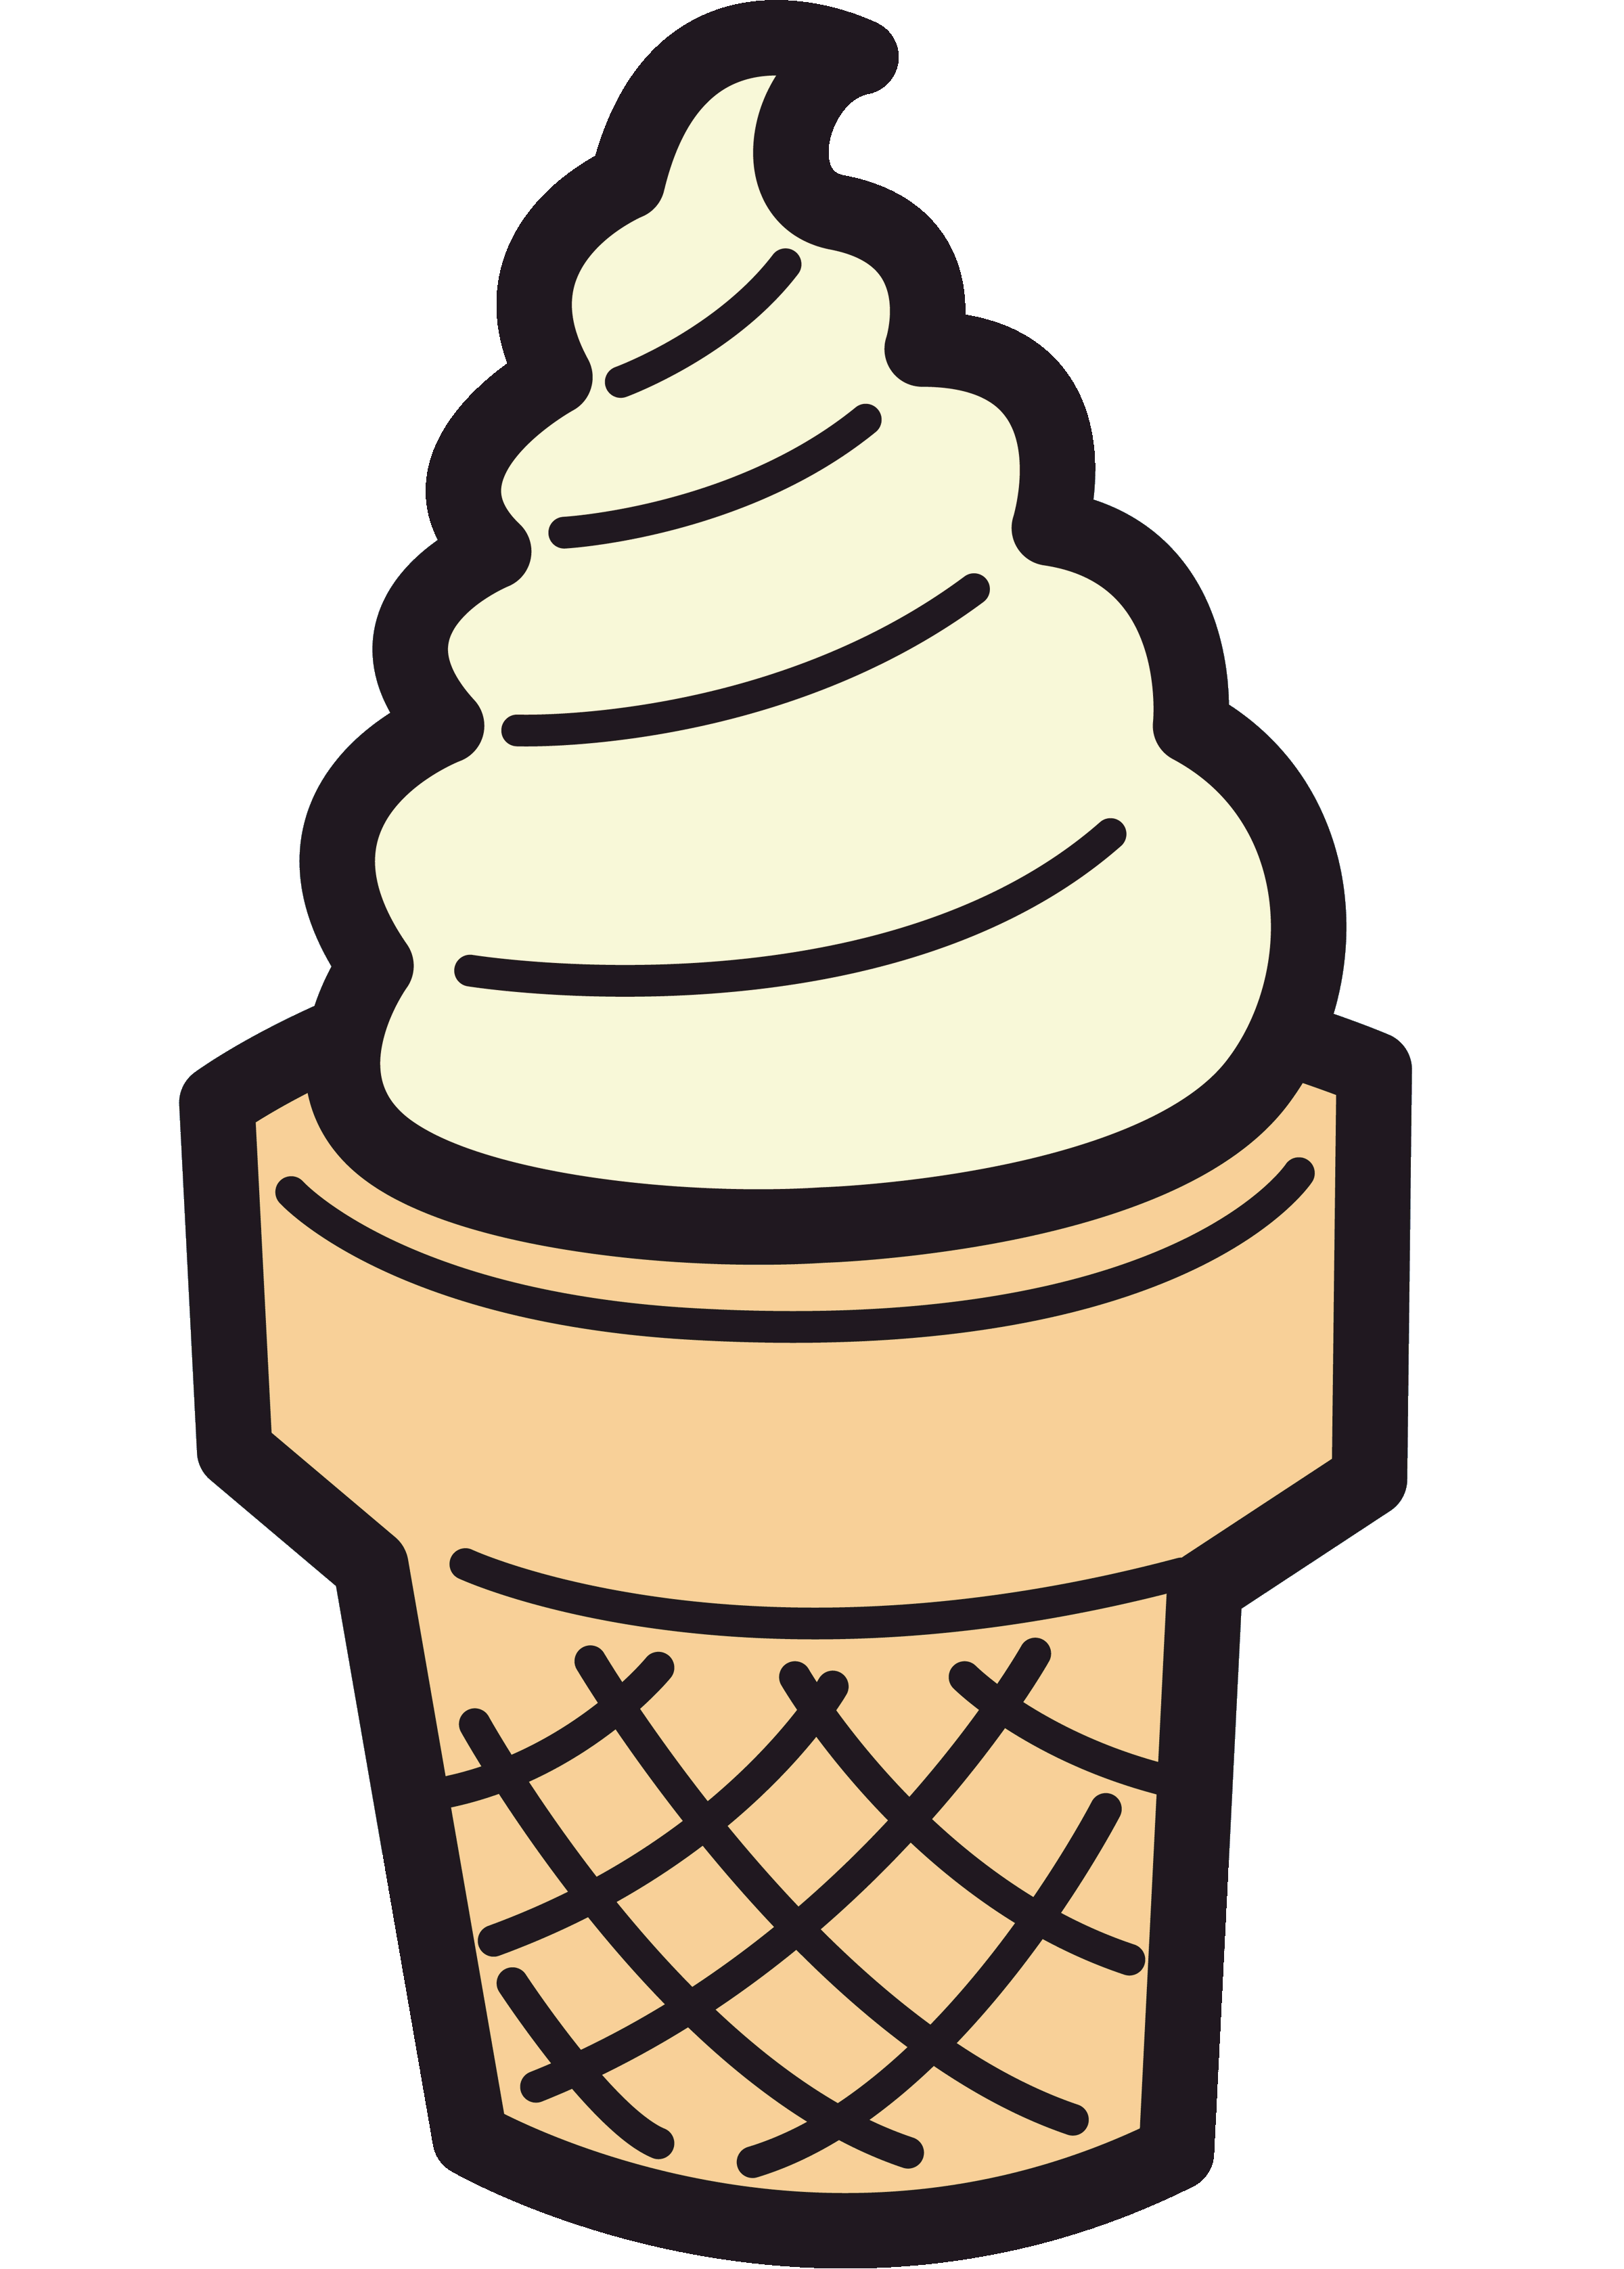 Ice cream cone clipart free images 4